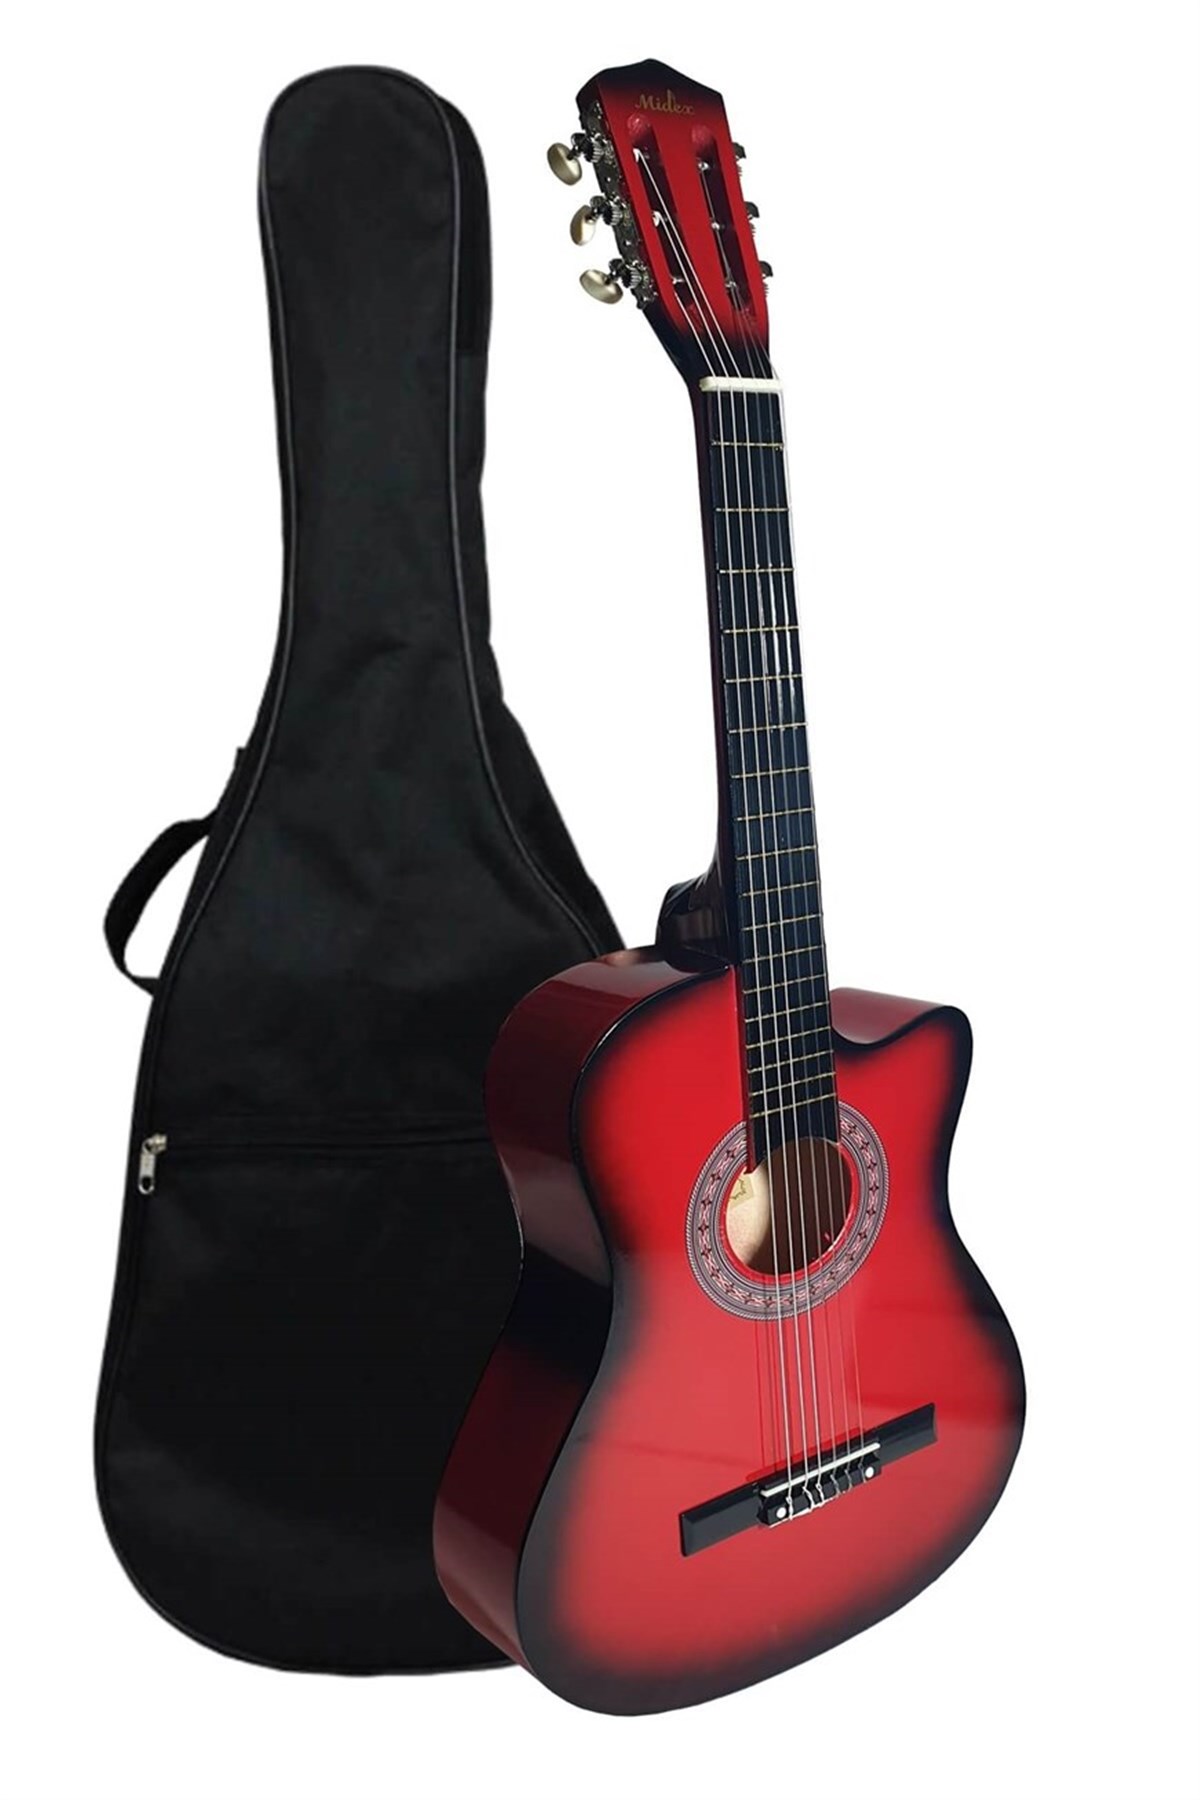 Midex G31RD Kesik Kasa Kırmızı Klasik Gitar 4/4 Kılıf ve Pena Hediyeli